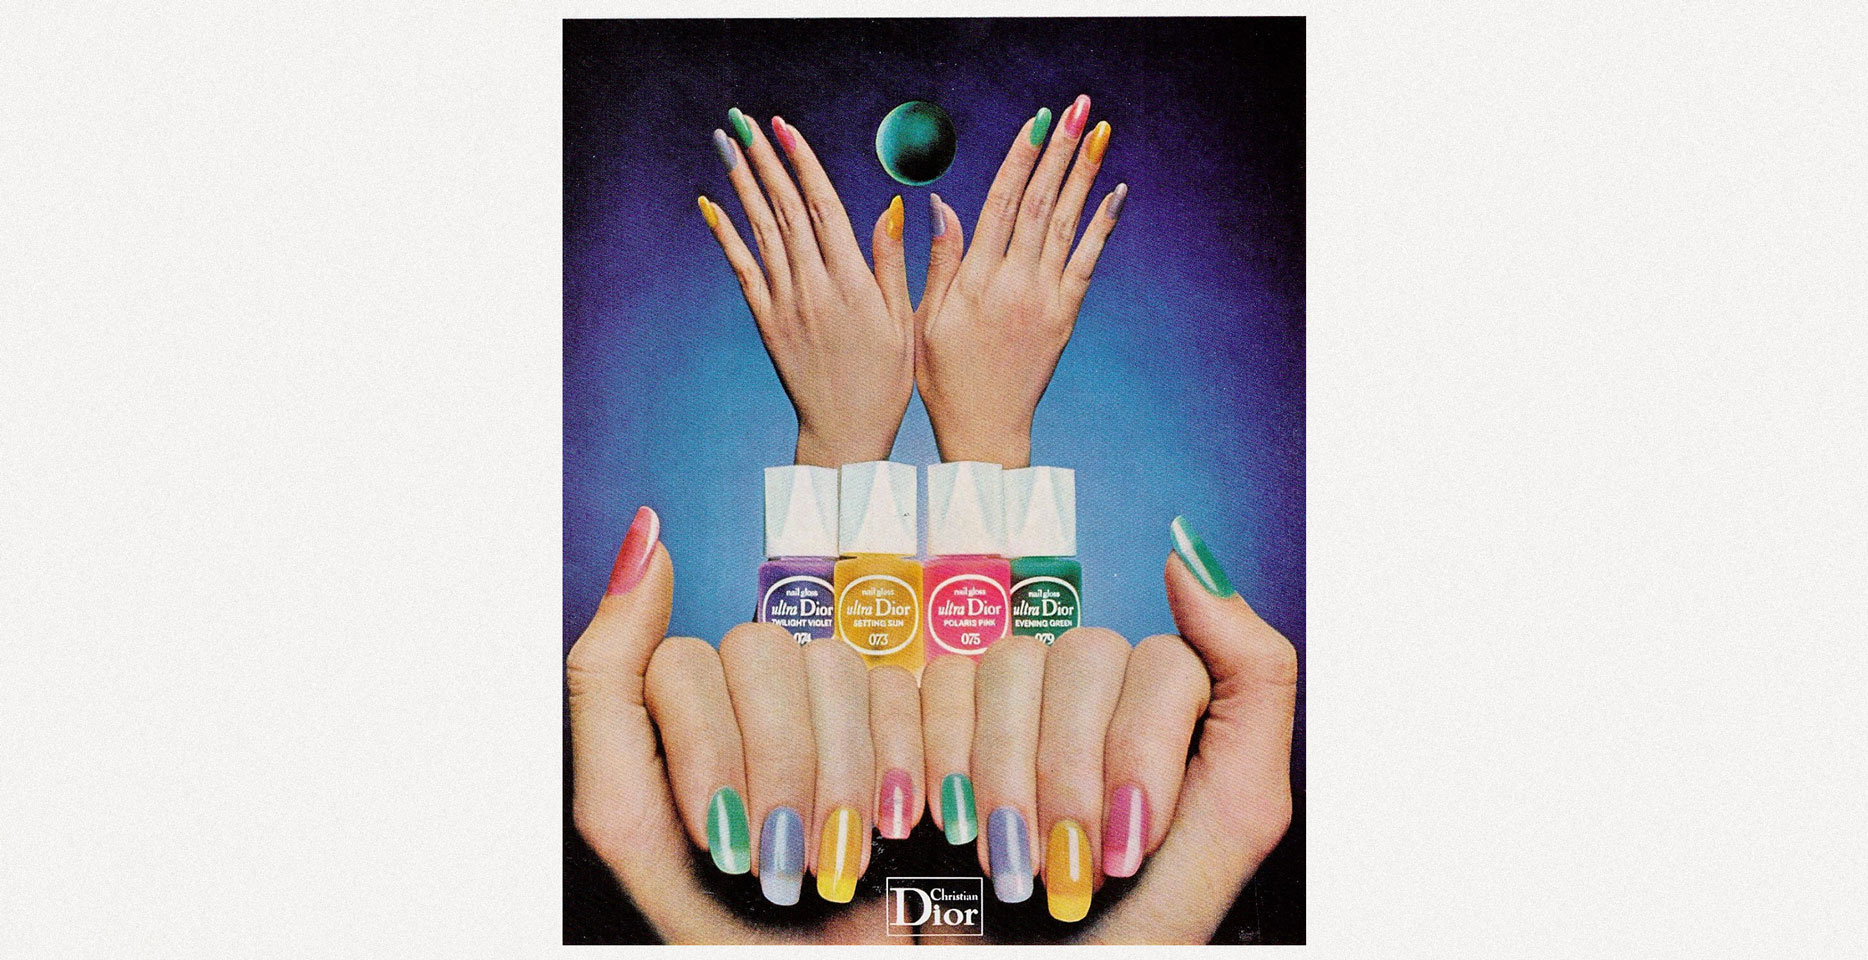 рекламная кампания Dior (1970-е)